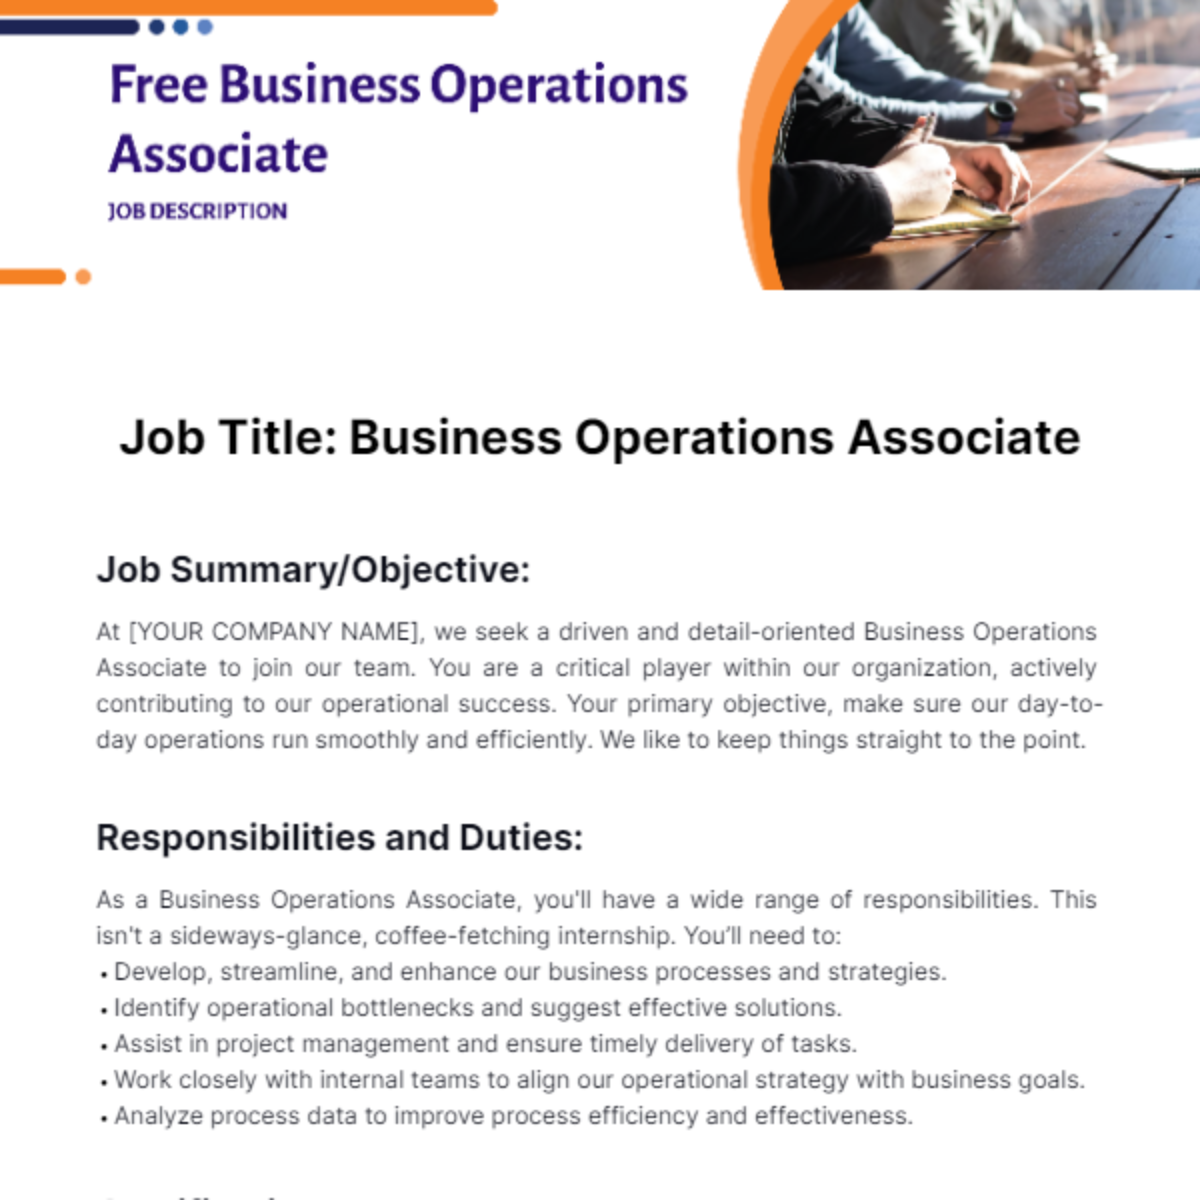 Free Business Operations Associate Job Description Template